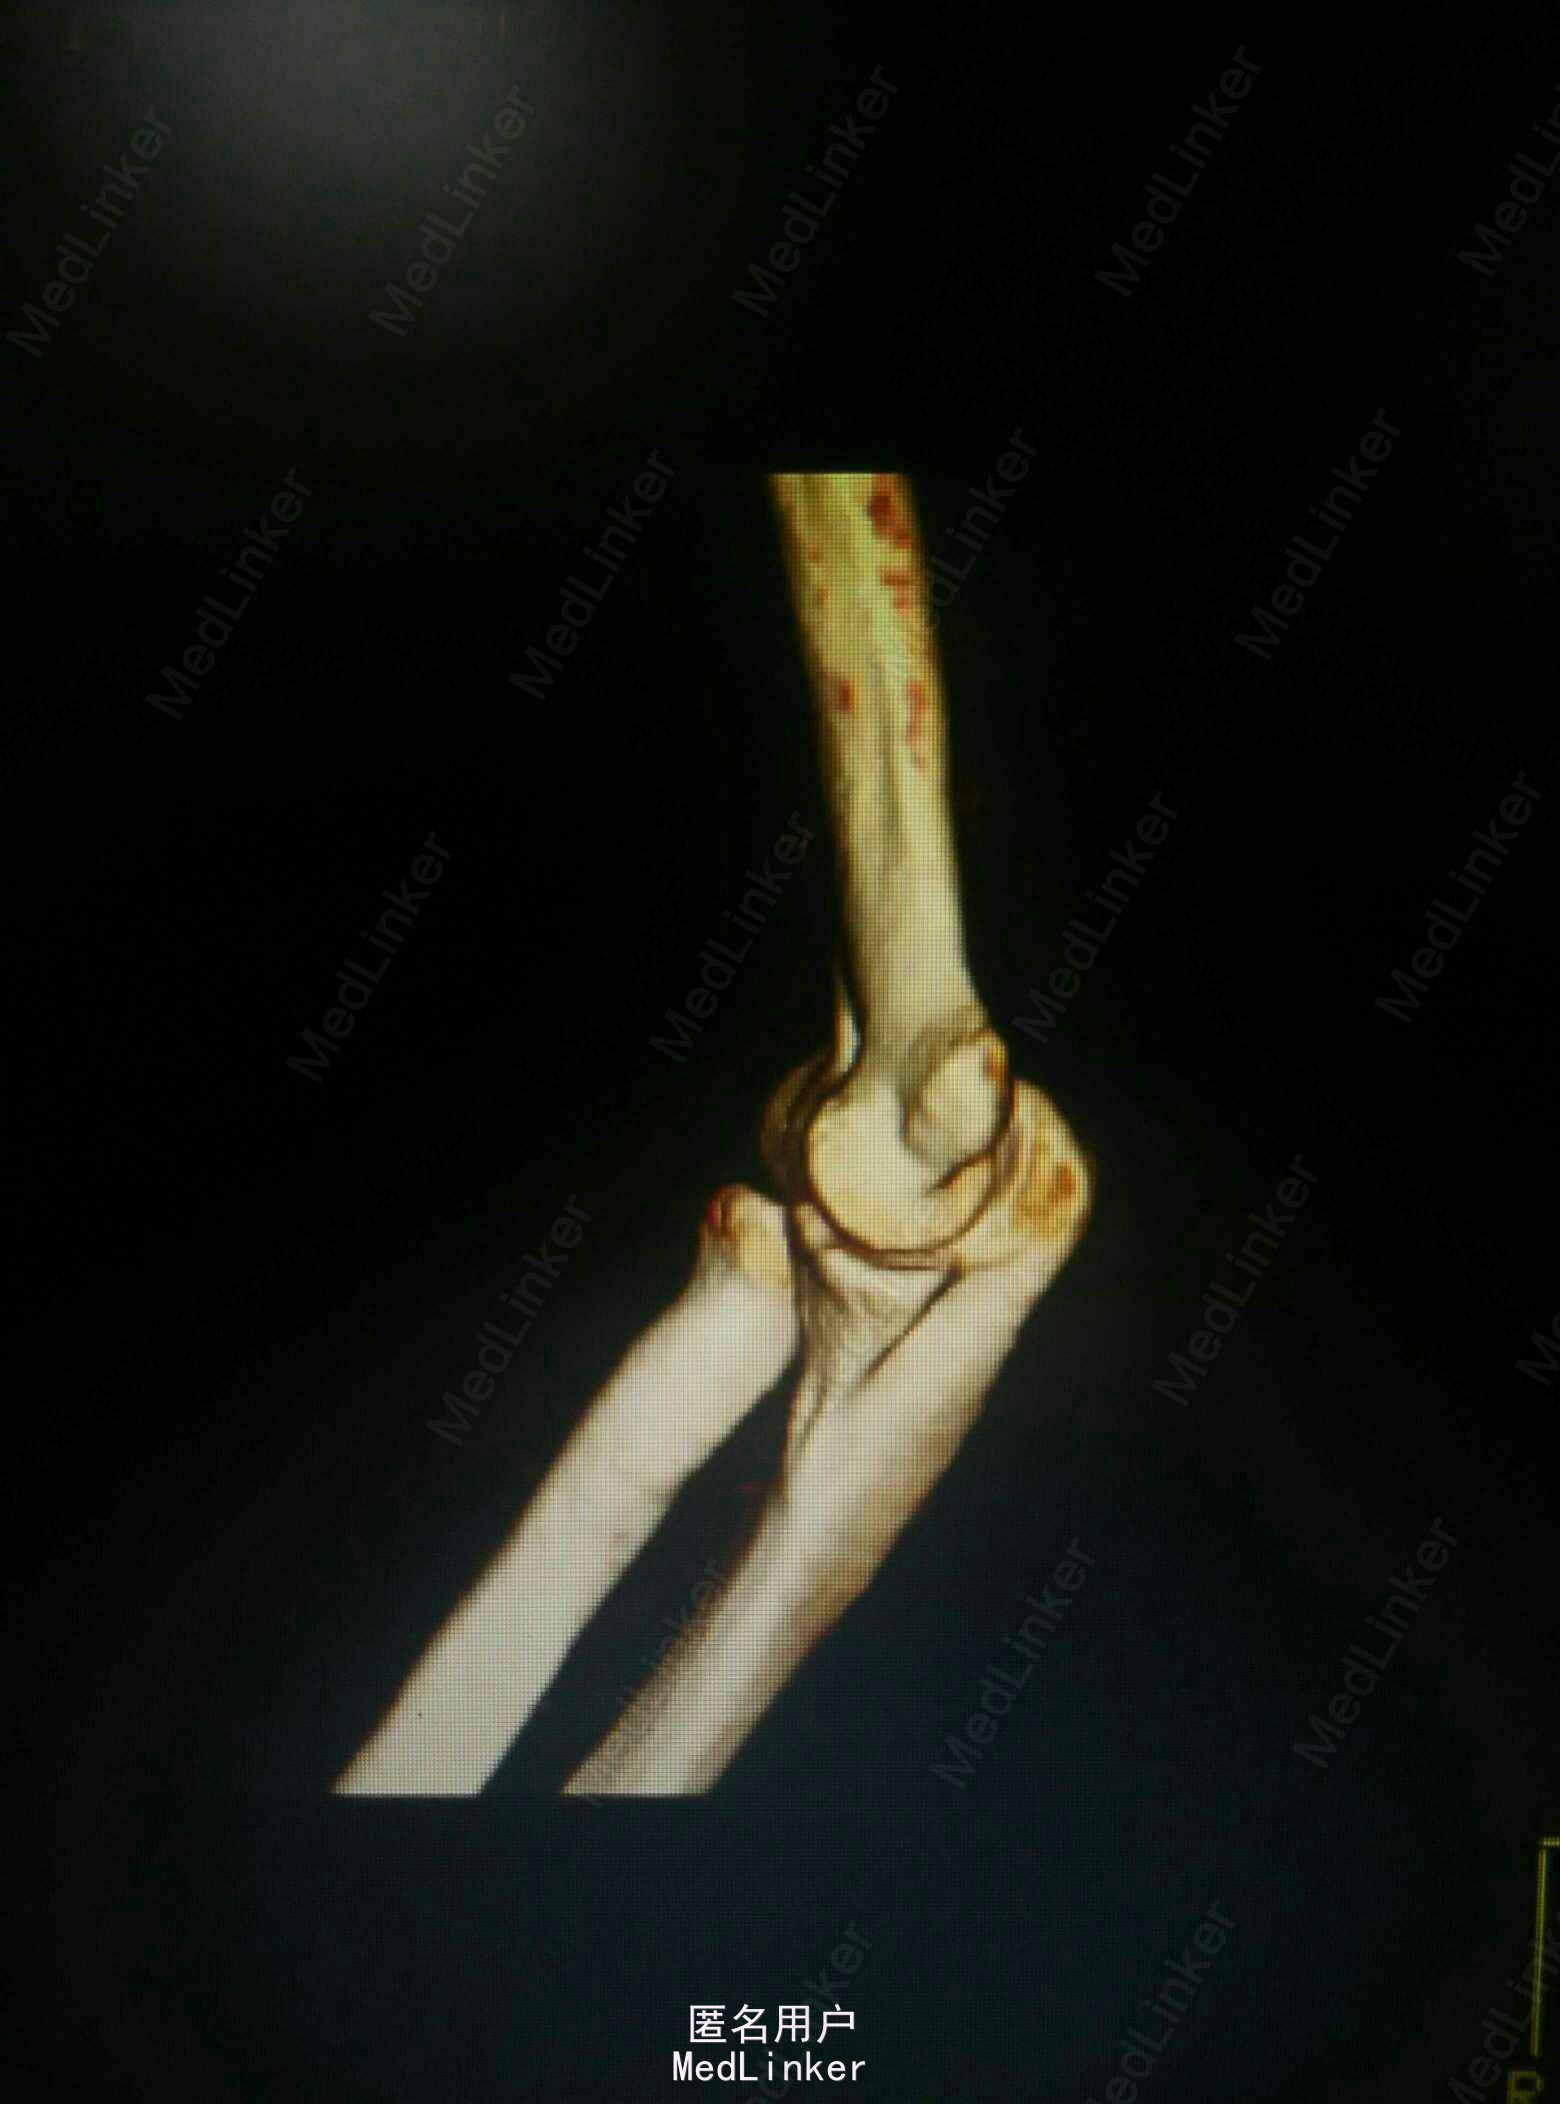 骨科基础 : 肘关节的关节镜入路汇总_医学界-助力医生临床决策和职业成长